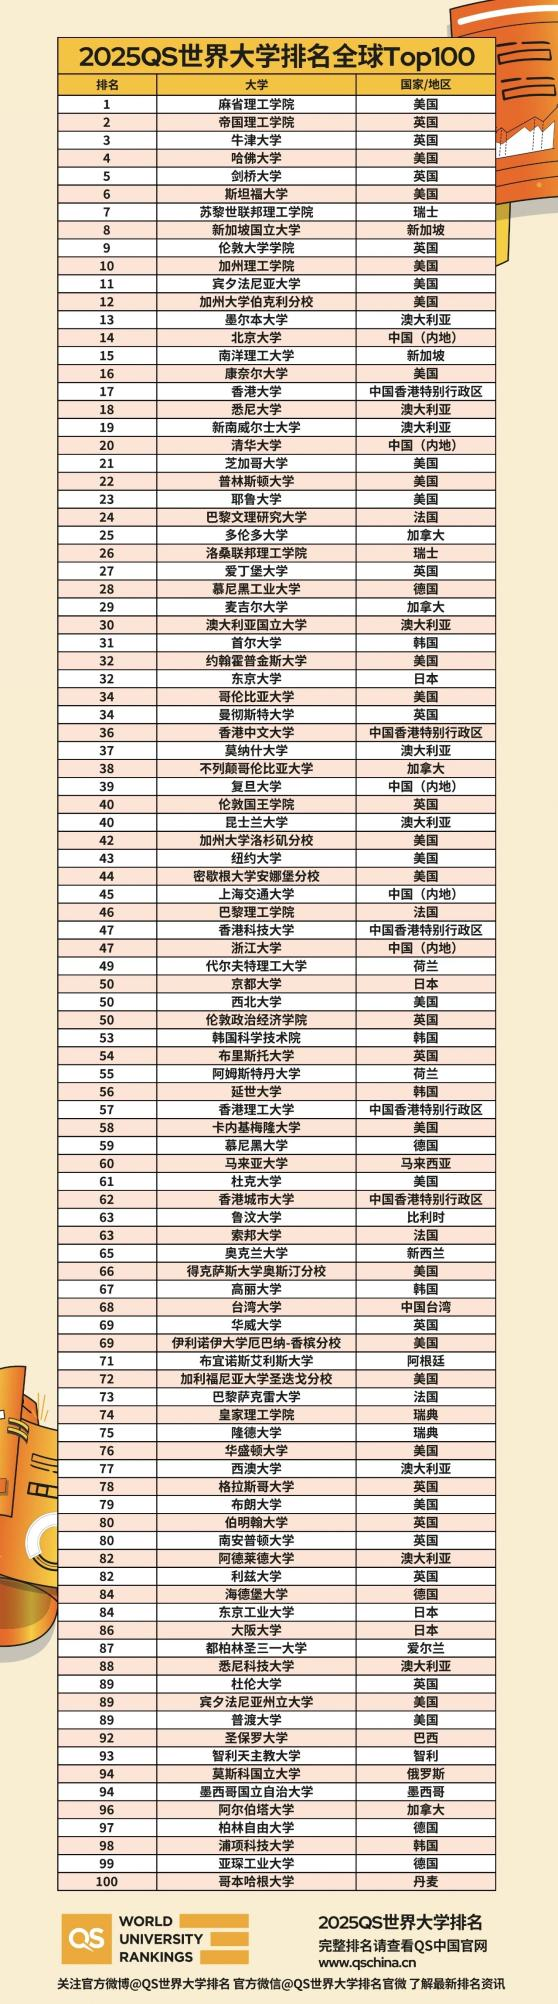 ⑤中国香港的前五所高校均保持在qs前100的行列当中且名次也都有上升